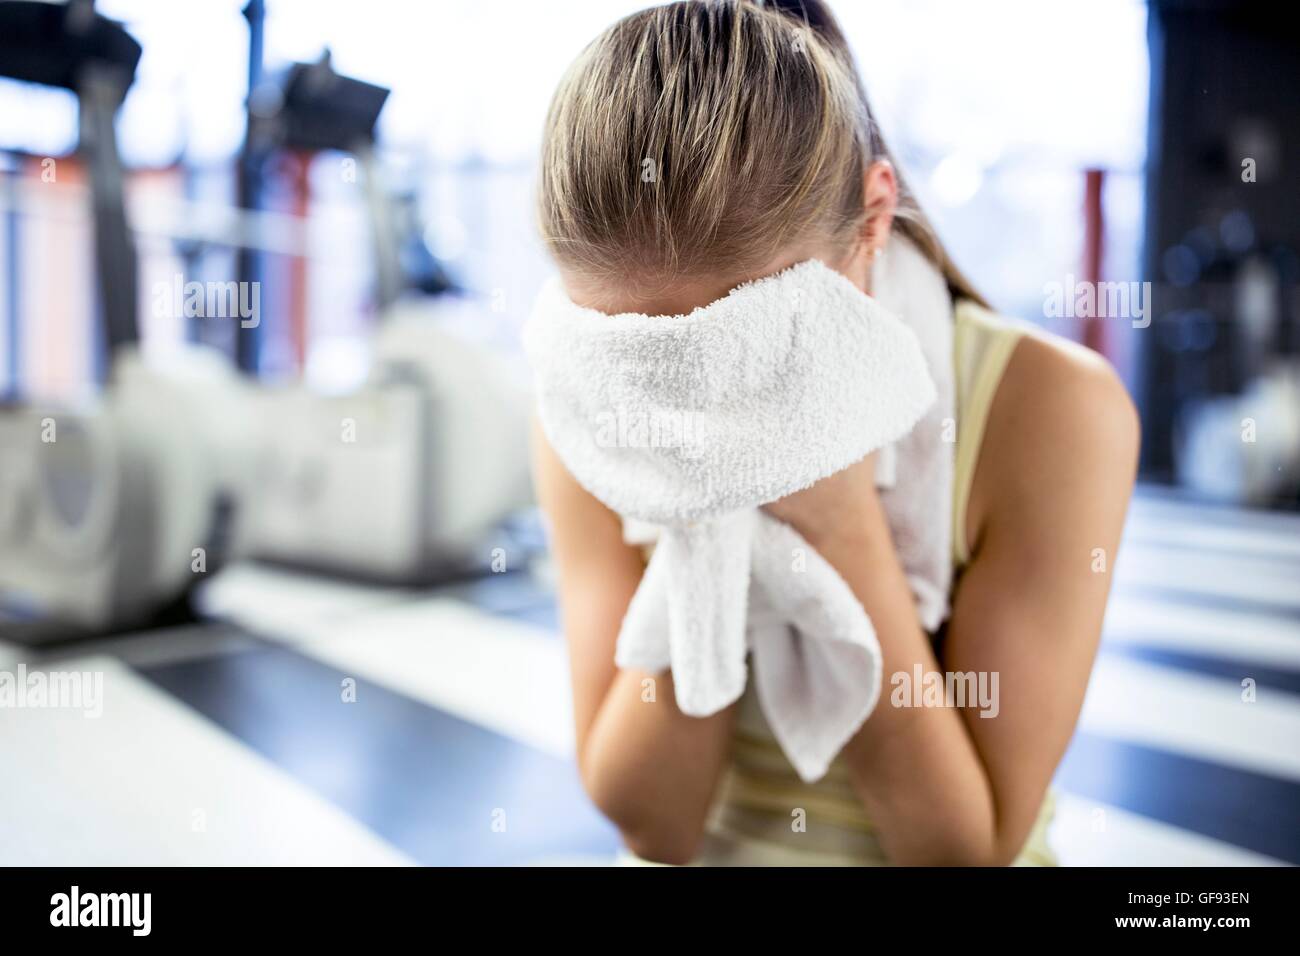 EIGENTUM FREIGEGEBEN. -MODELL VERÖFFENTLICHT. Junge Frau wischte sich den Schweiß mit Handtuch nach dem Training im Fitness-Studio. Stockfoto